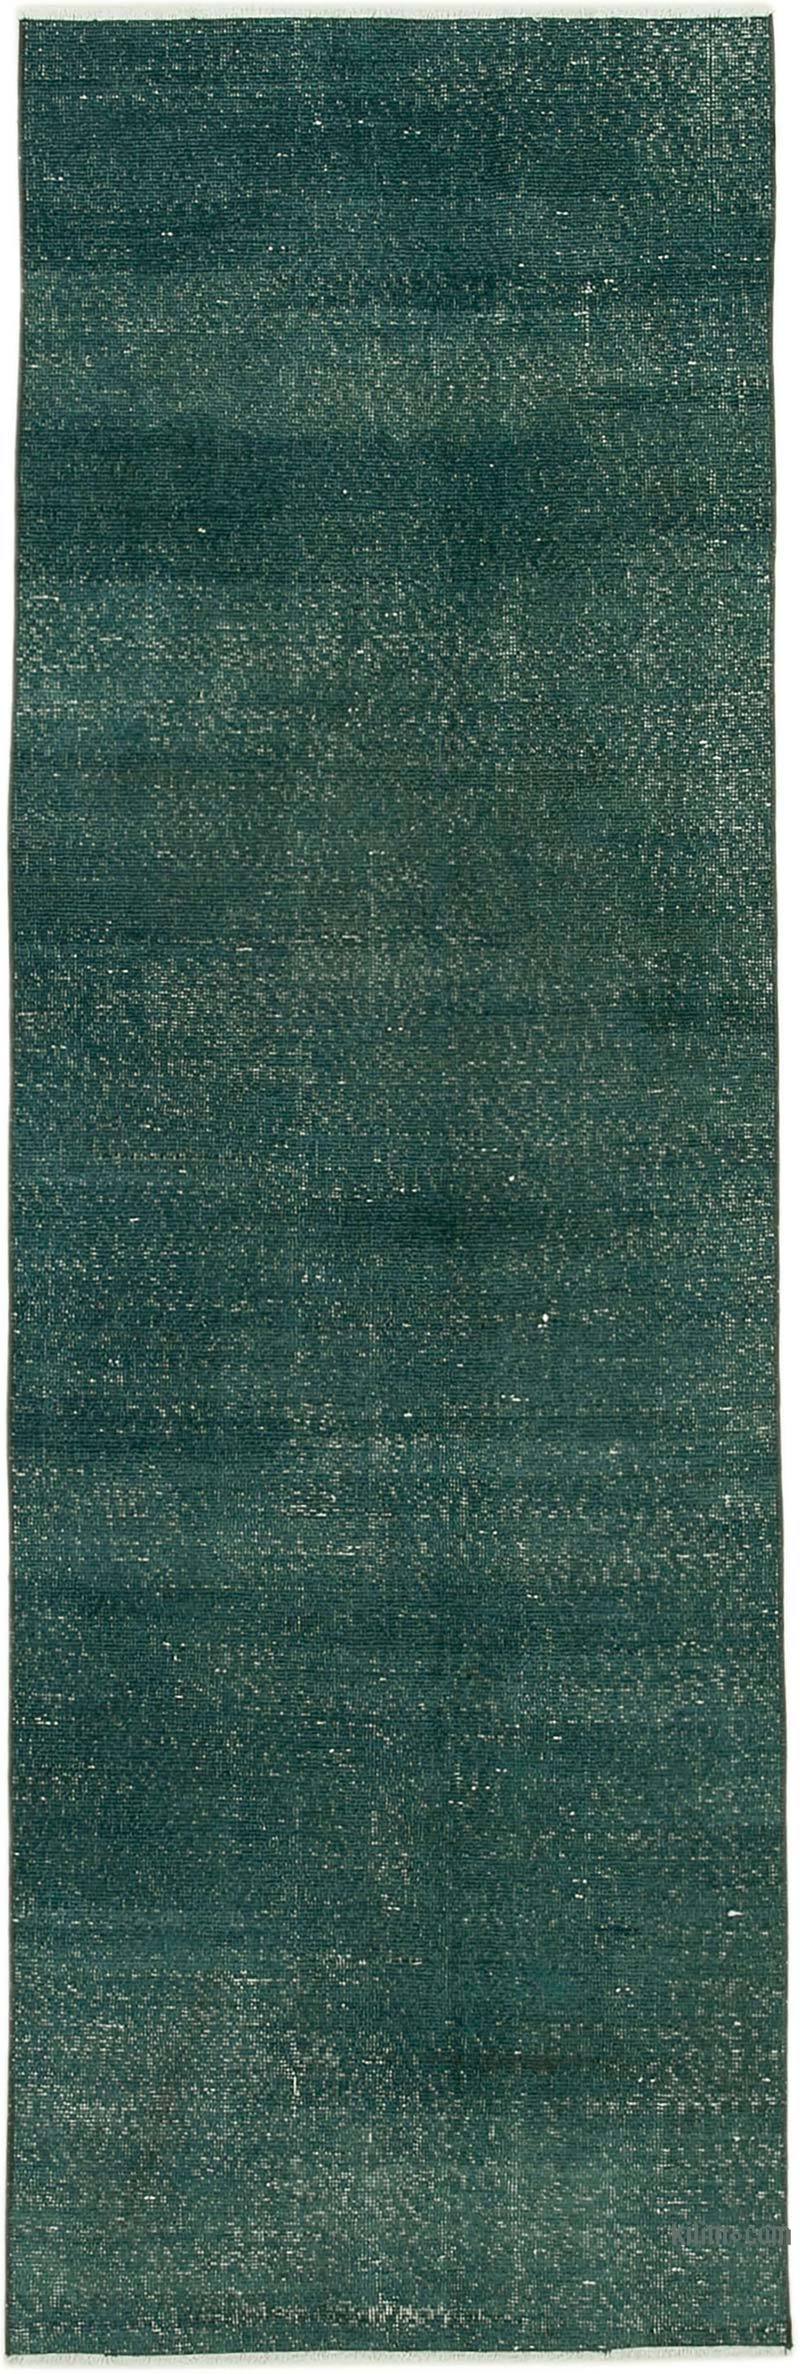 Yeşil Boyalı El Dokuma Vintage Halı Yolluk - 90 cm x 273 cm - K0052165